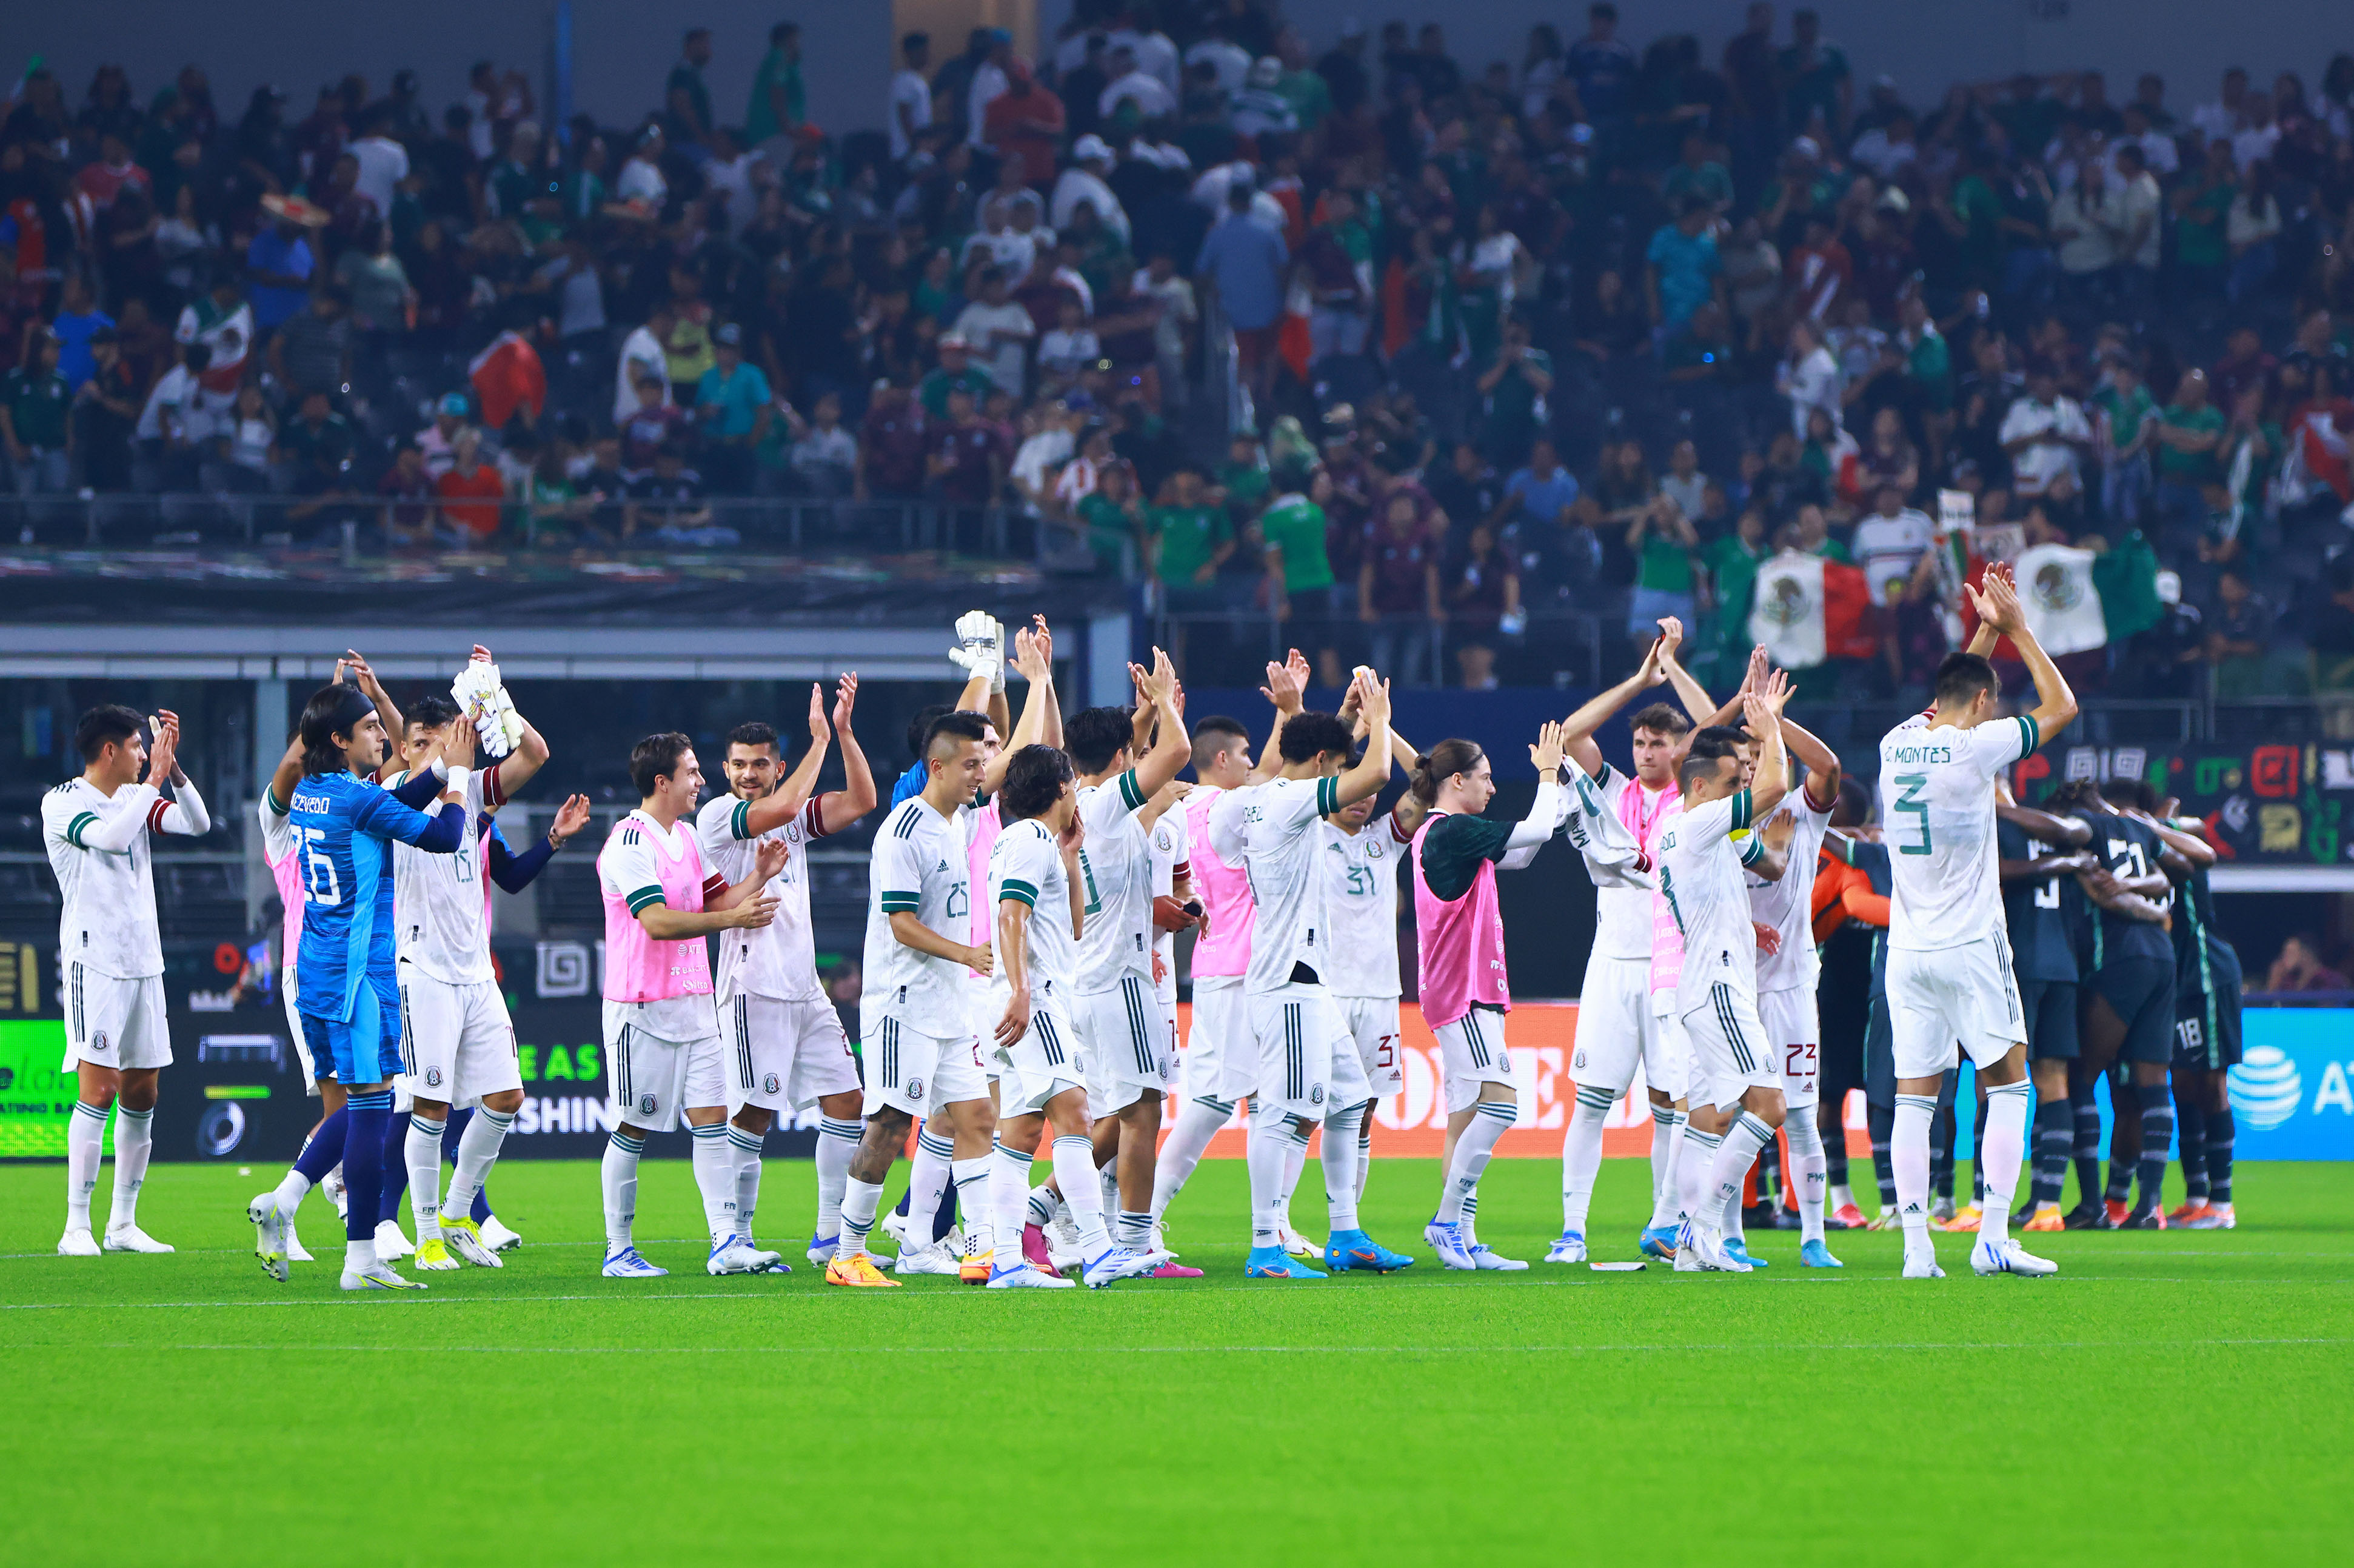 Jugadores de la Seleeción Mexicana al término de un partido amistosos en Estados Unidos. Foto: Twitter/@miseleccionmx